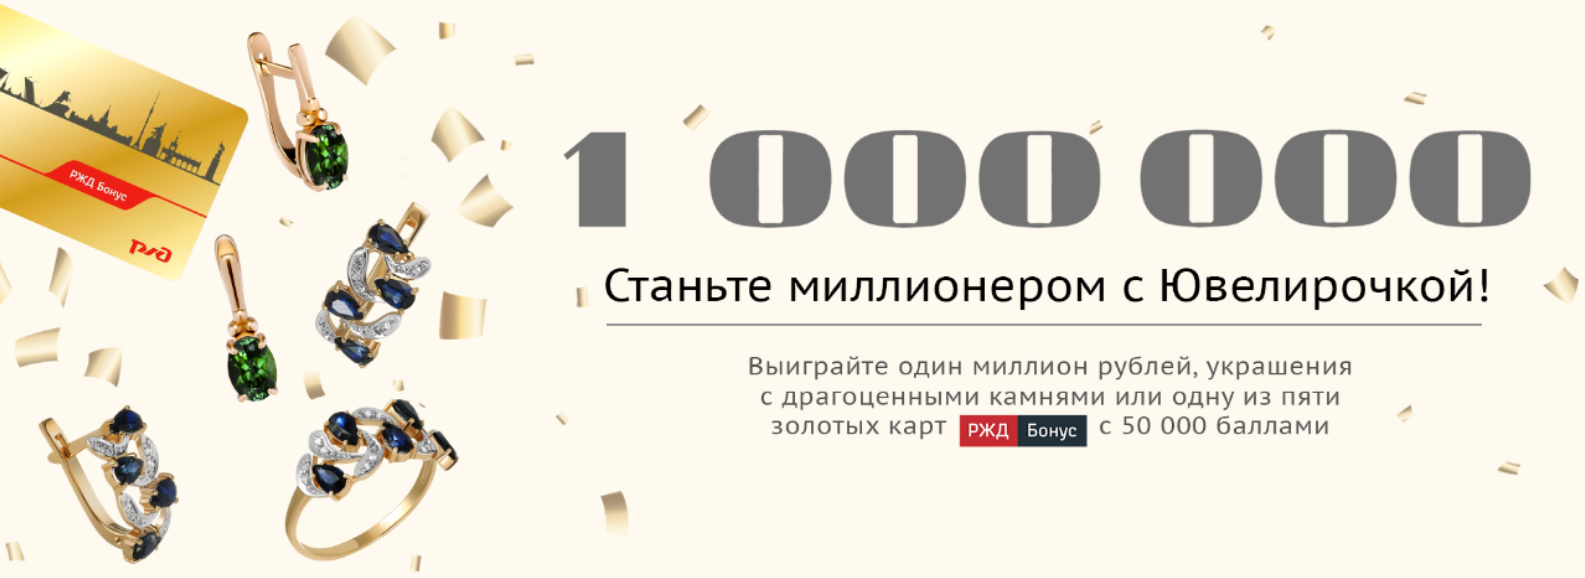 Акция «Станьте миллионером с Ювелирочкой» — выиграйте 1 000 000 рублей или другие призы!